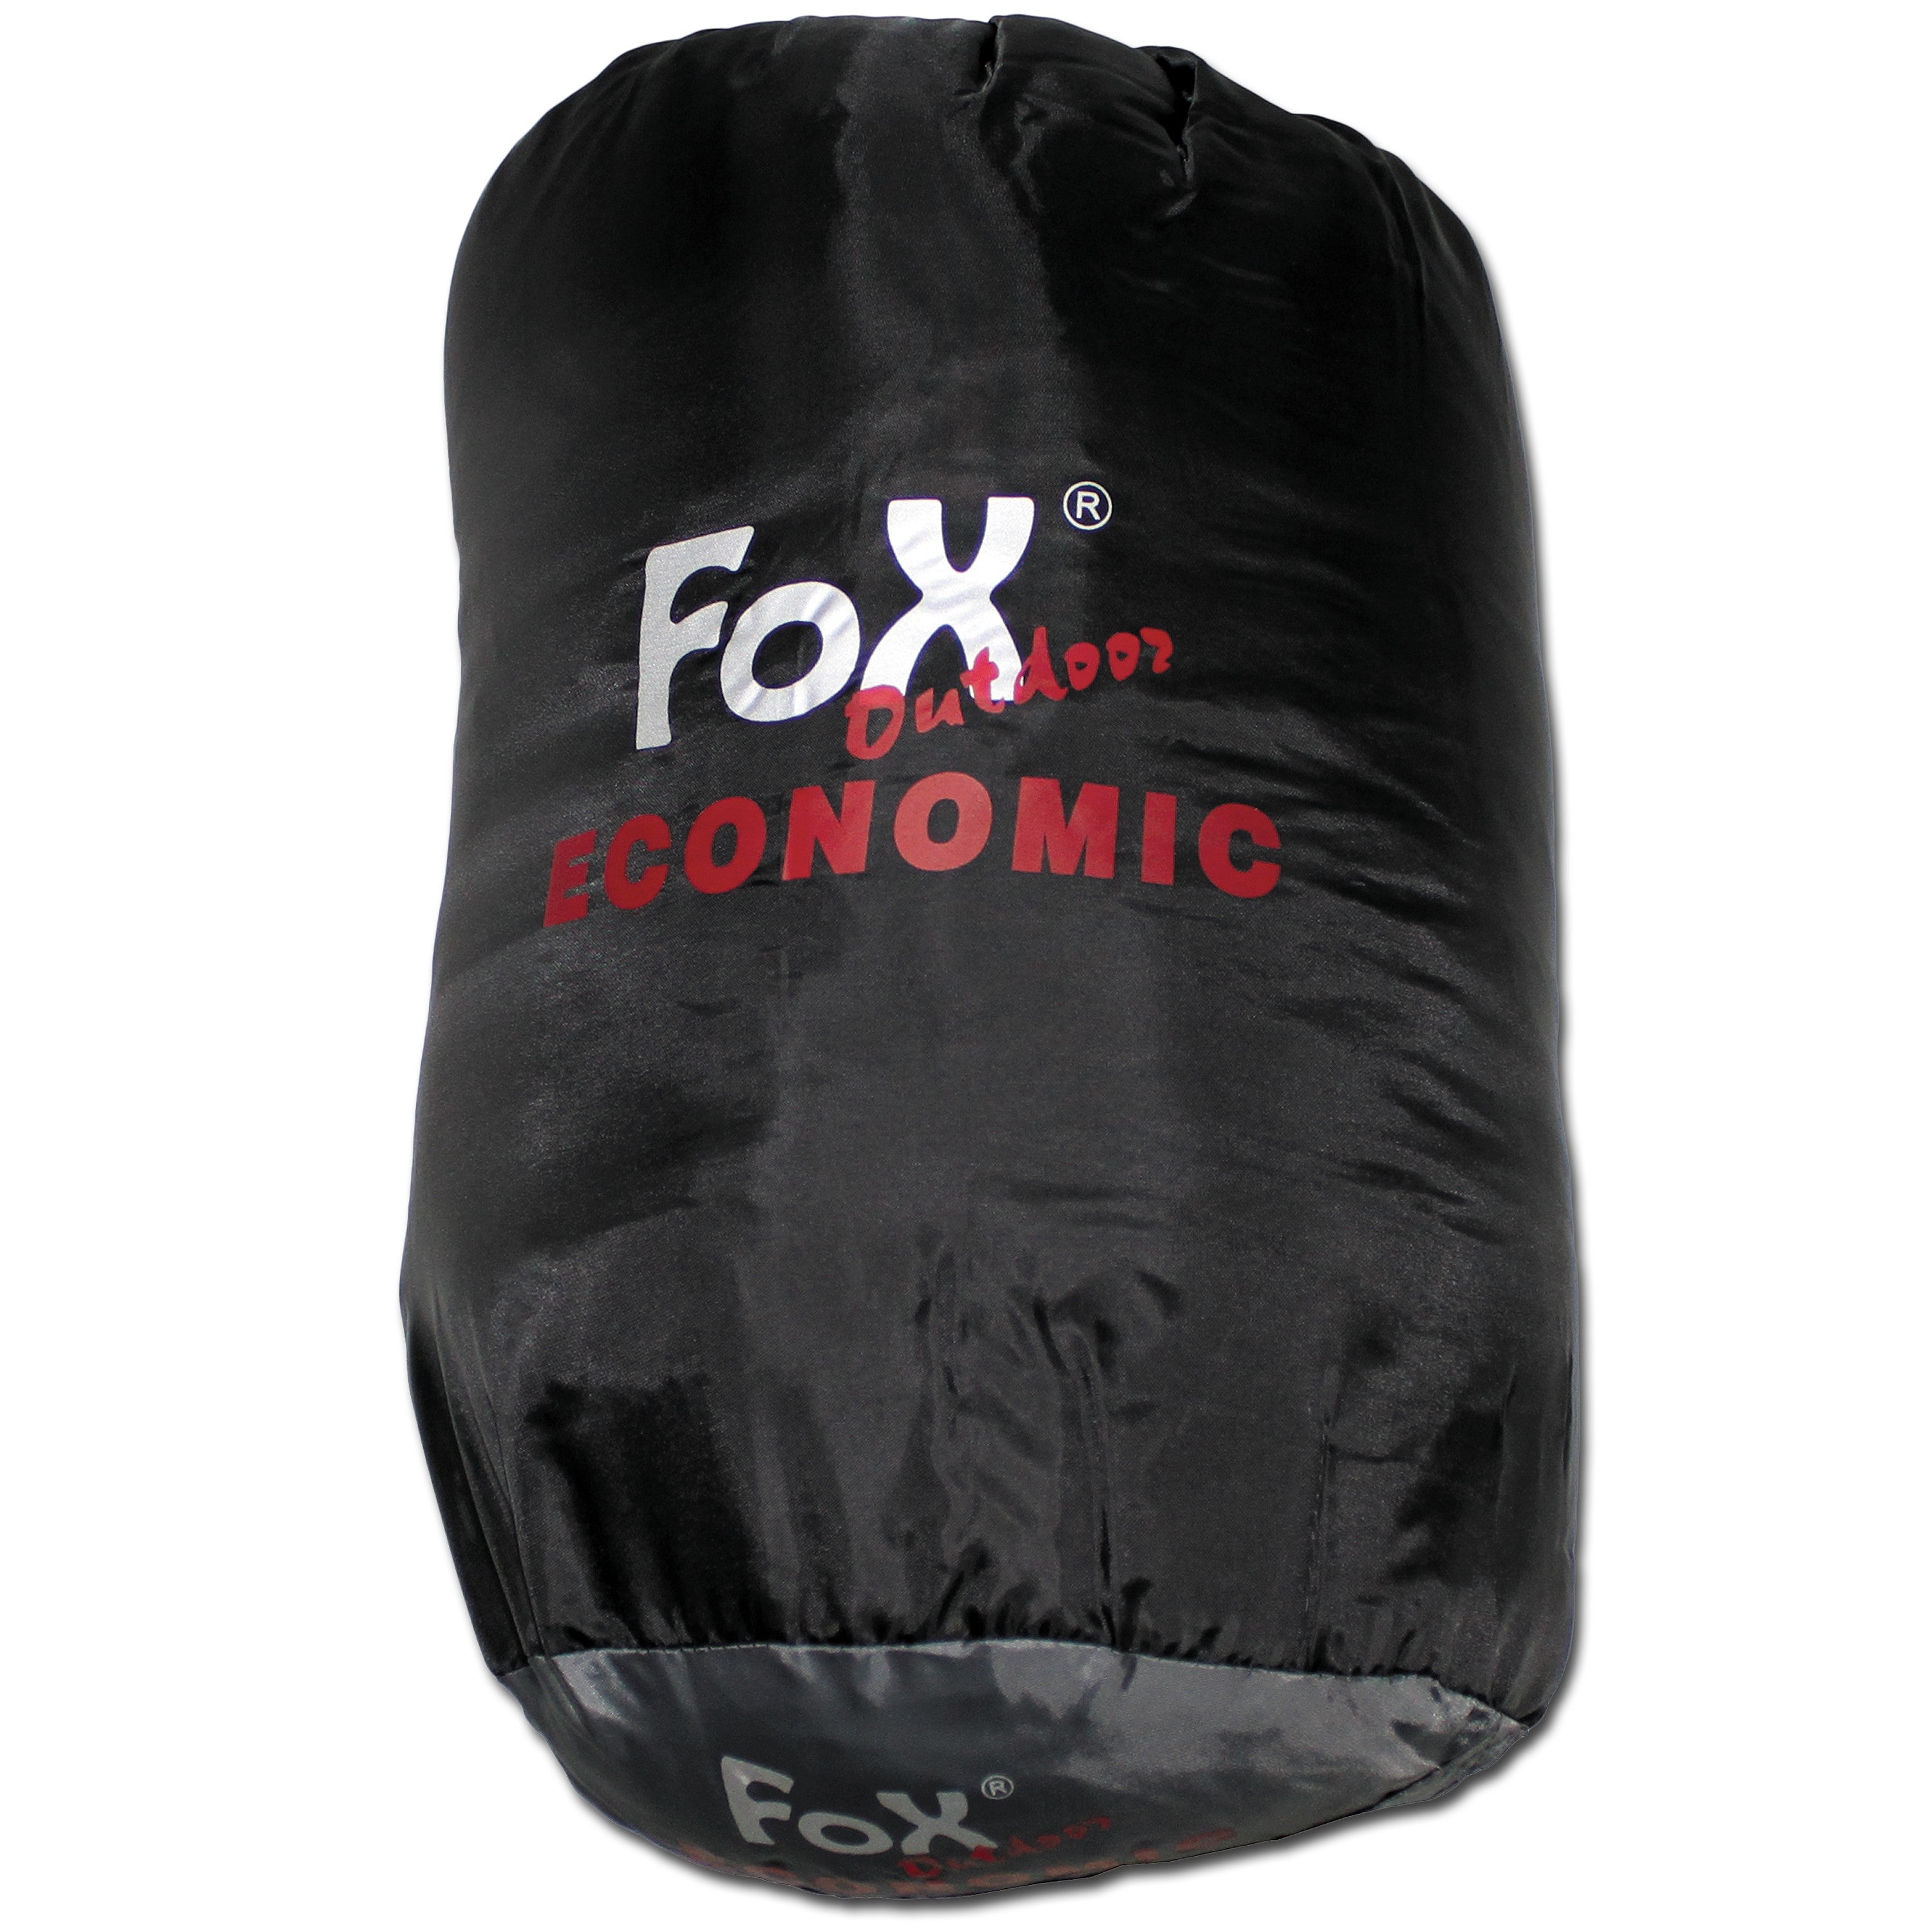 Fox Outdoor Mumienschlafsack Economic schwarz grau